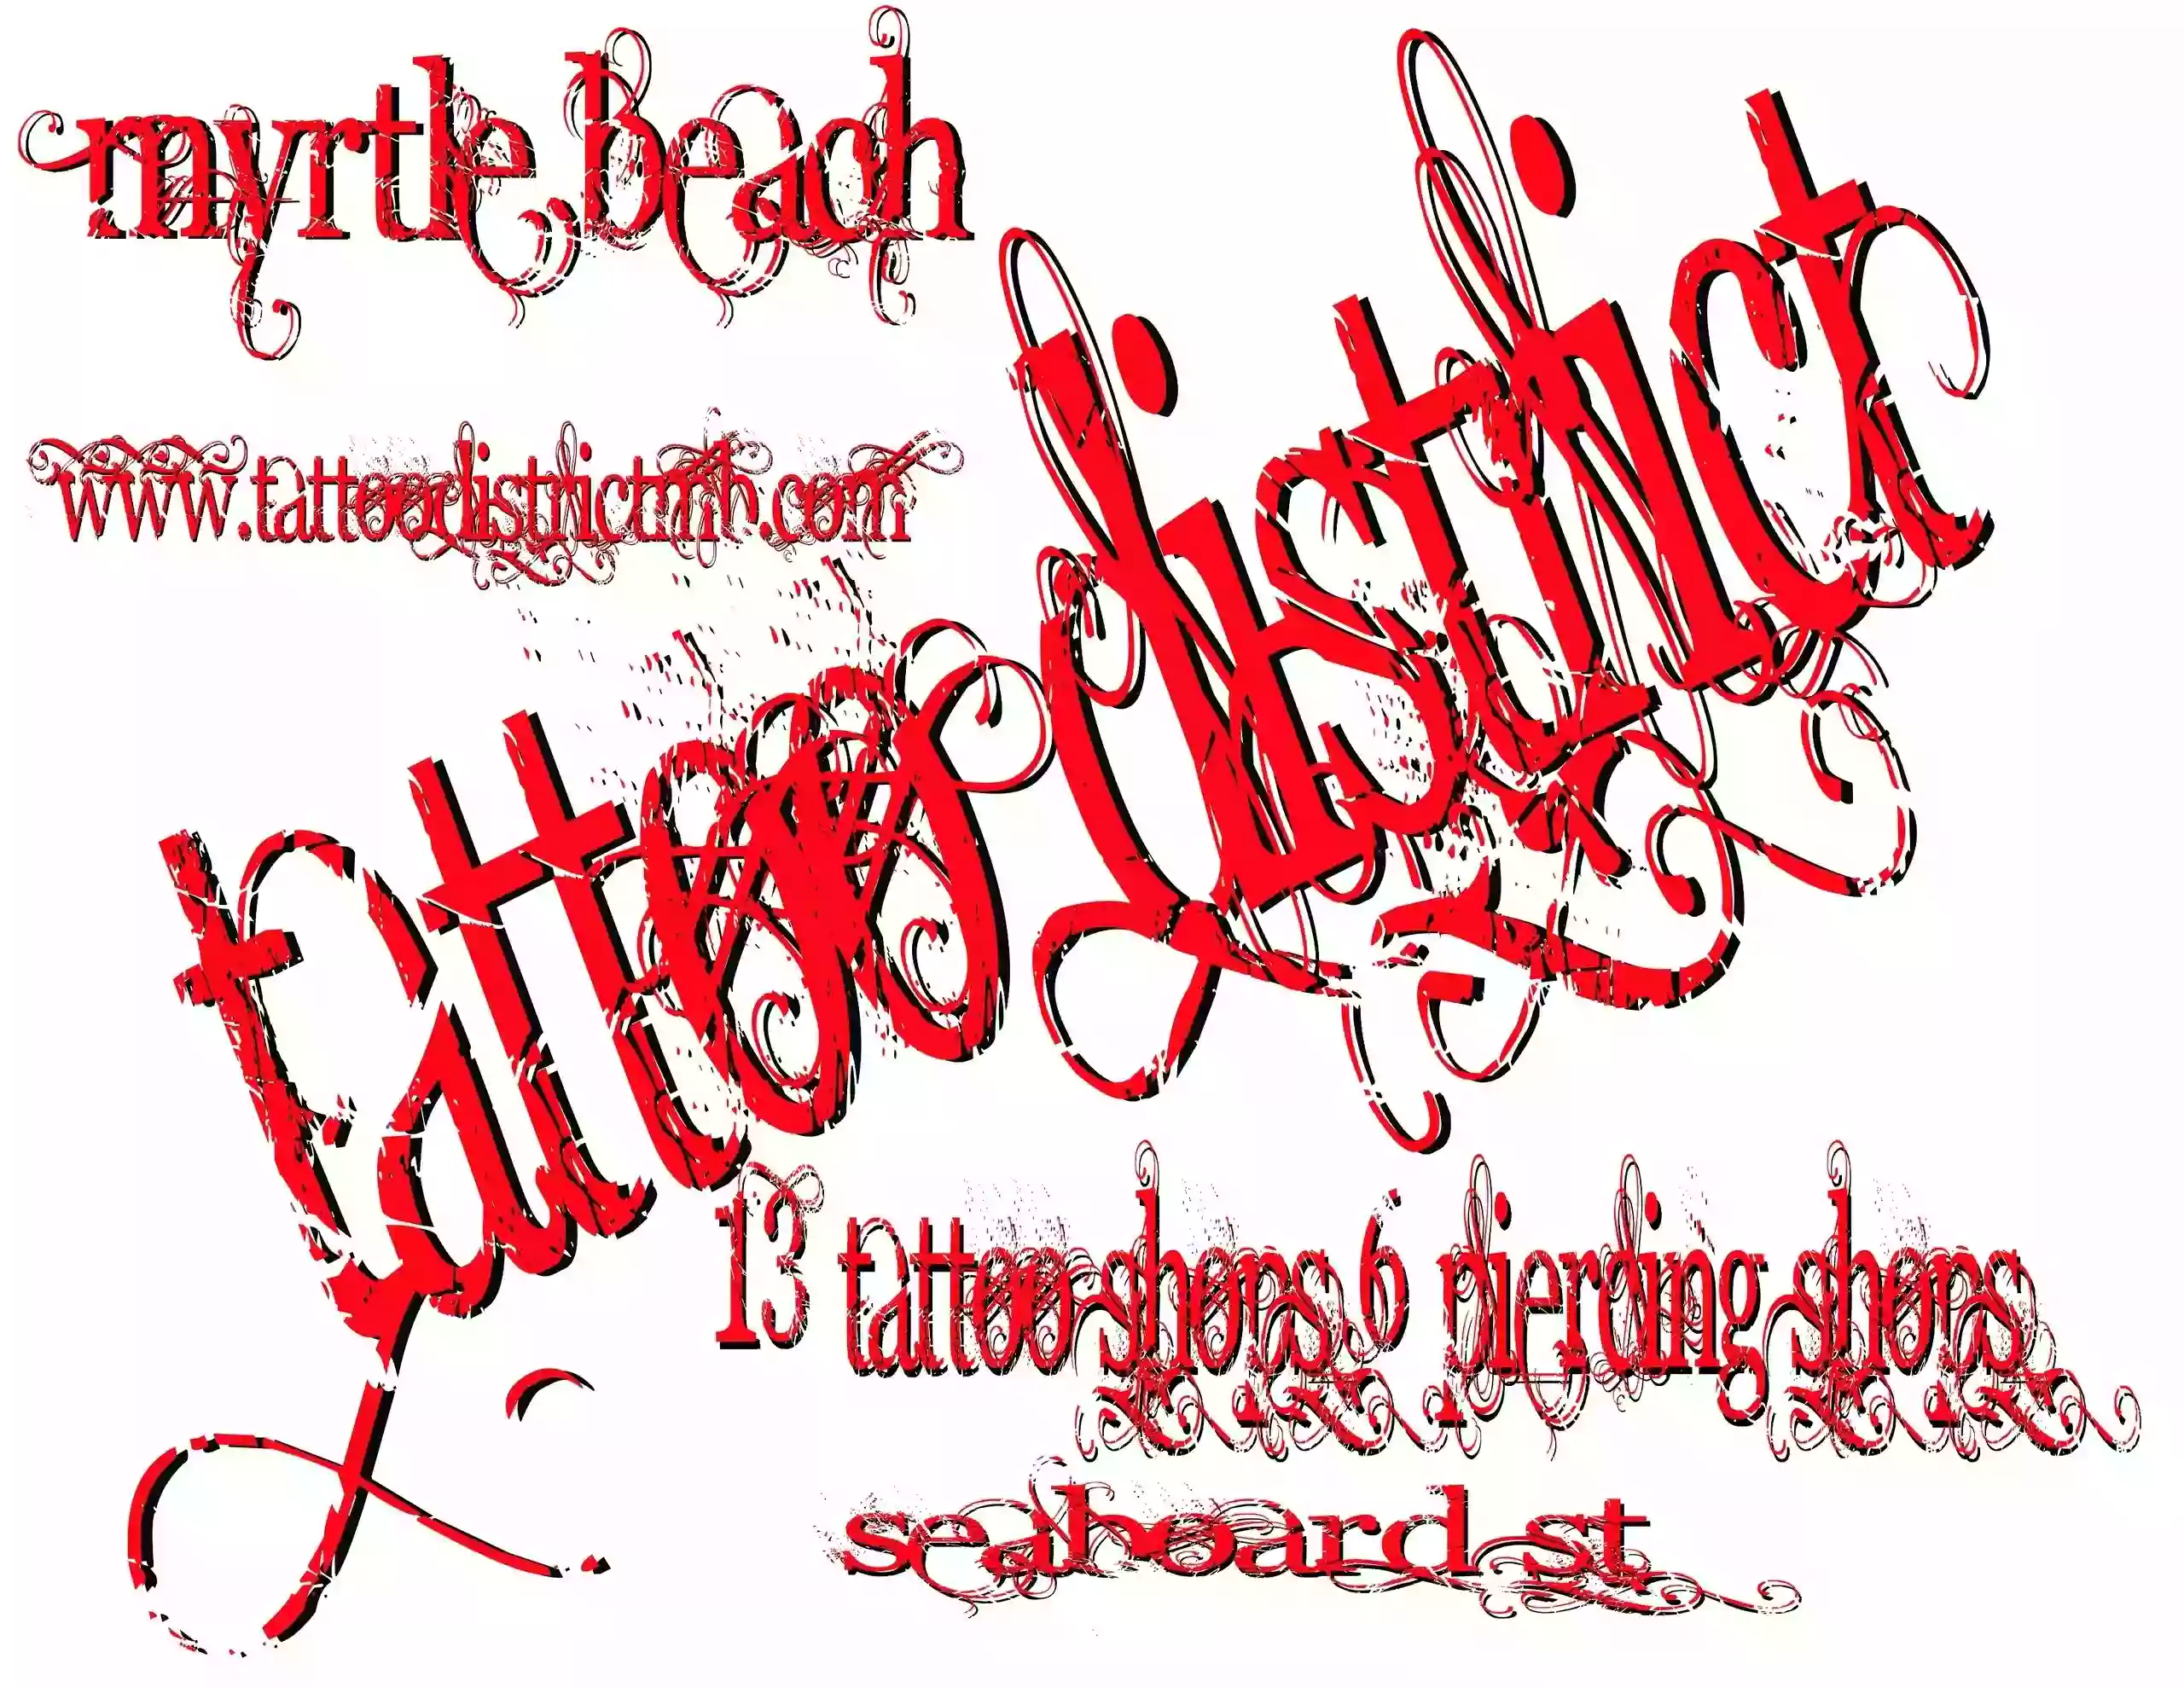 Tattoo district mb